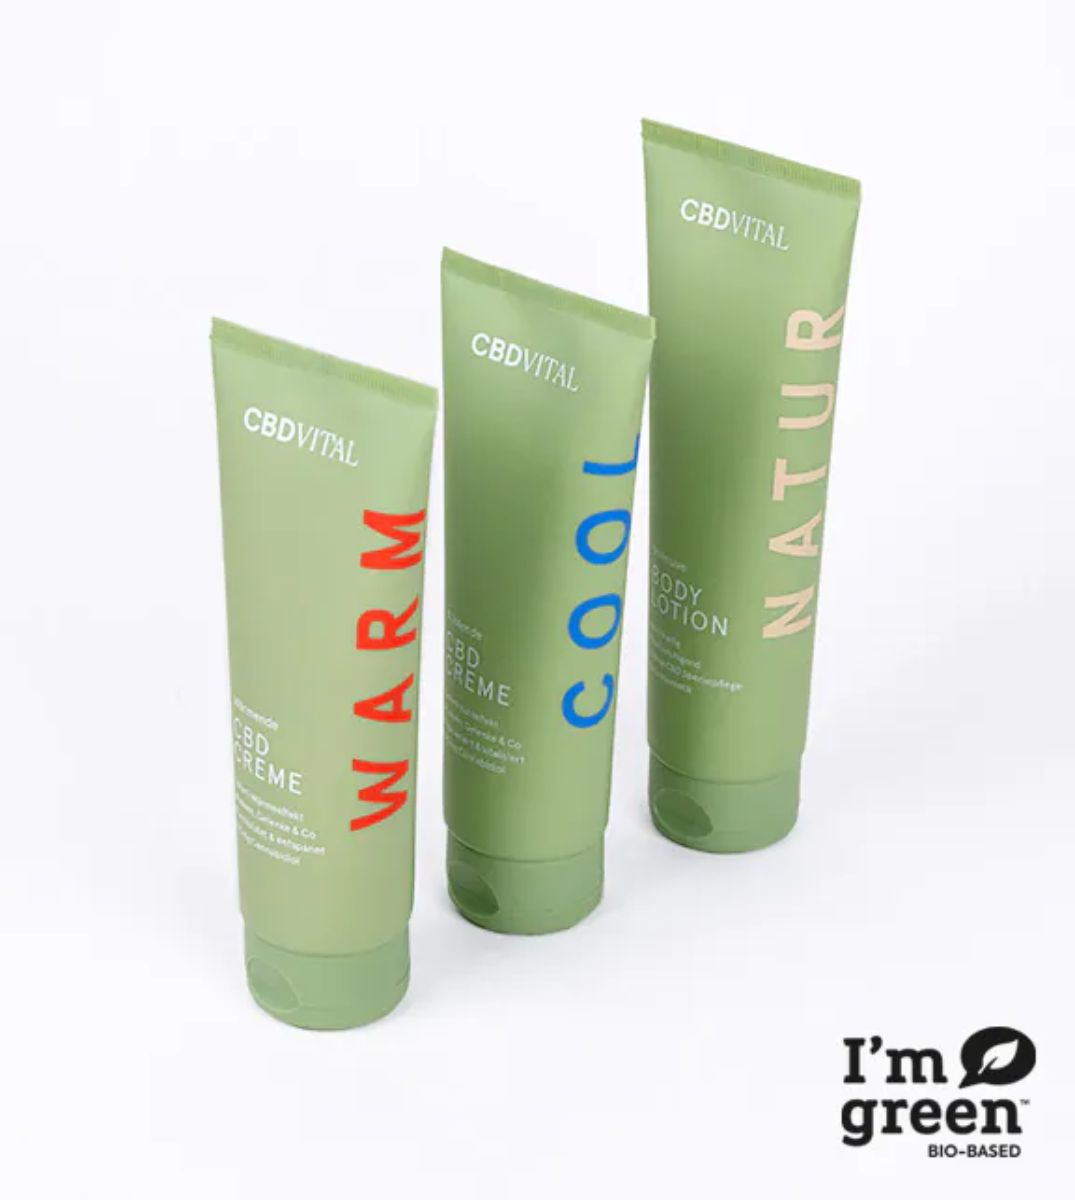 CBDVITAL Hautpflege-Serie mit WARM, COOL, und NATUR CBD Cremes, nachhaltige Bio-basierte Hautpflegeprodukte